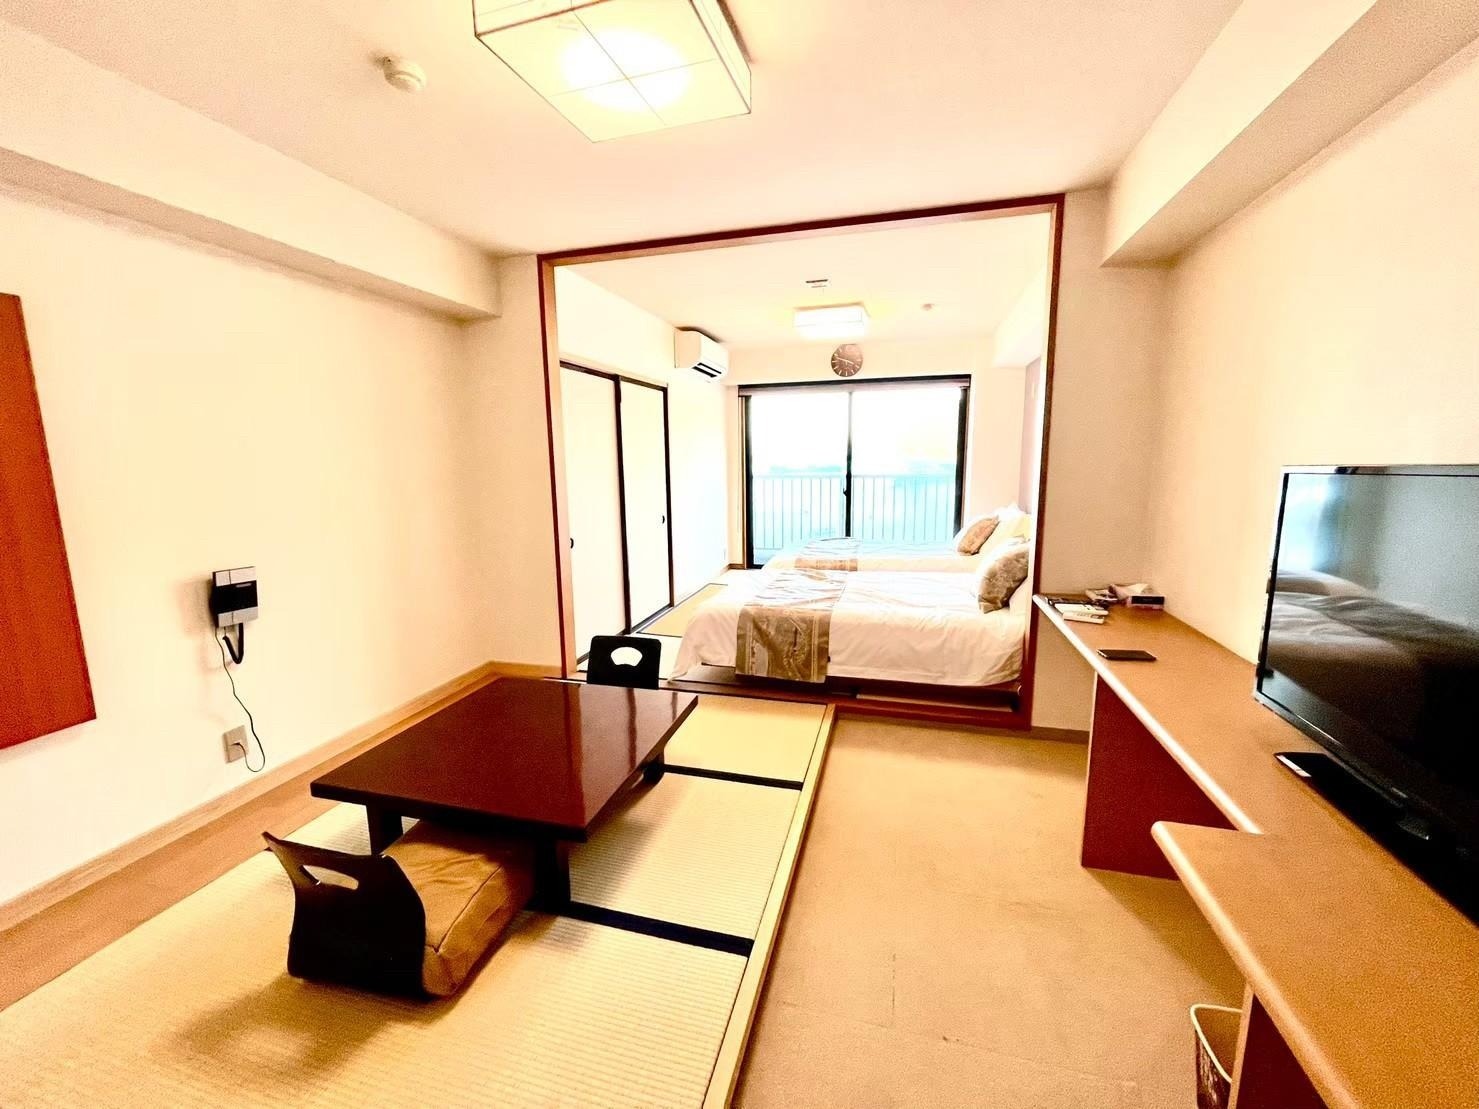 西伊豆|知る人ぞ知る美しい入江が眺める貸別荘|最大43人宿泊可能!